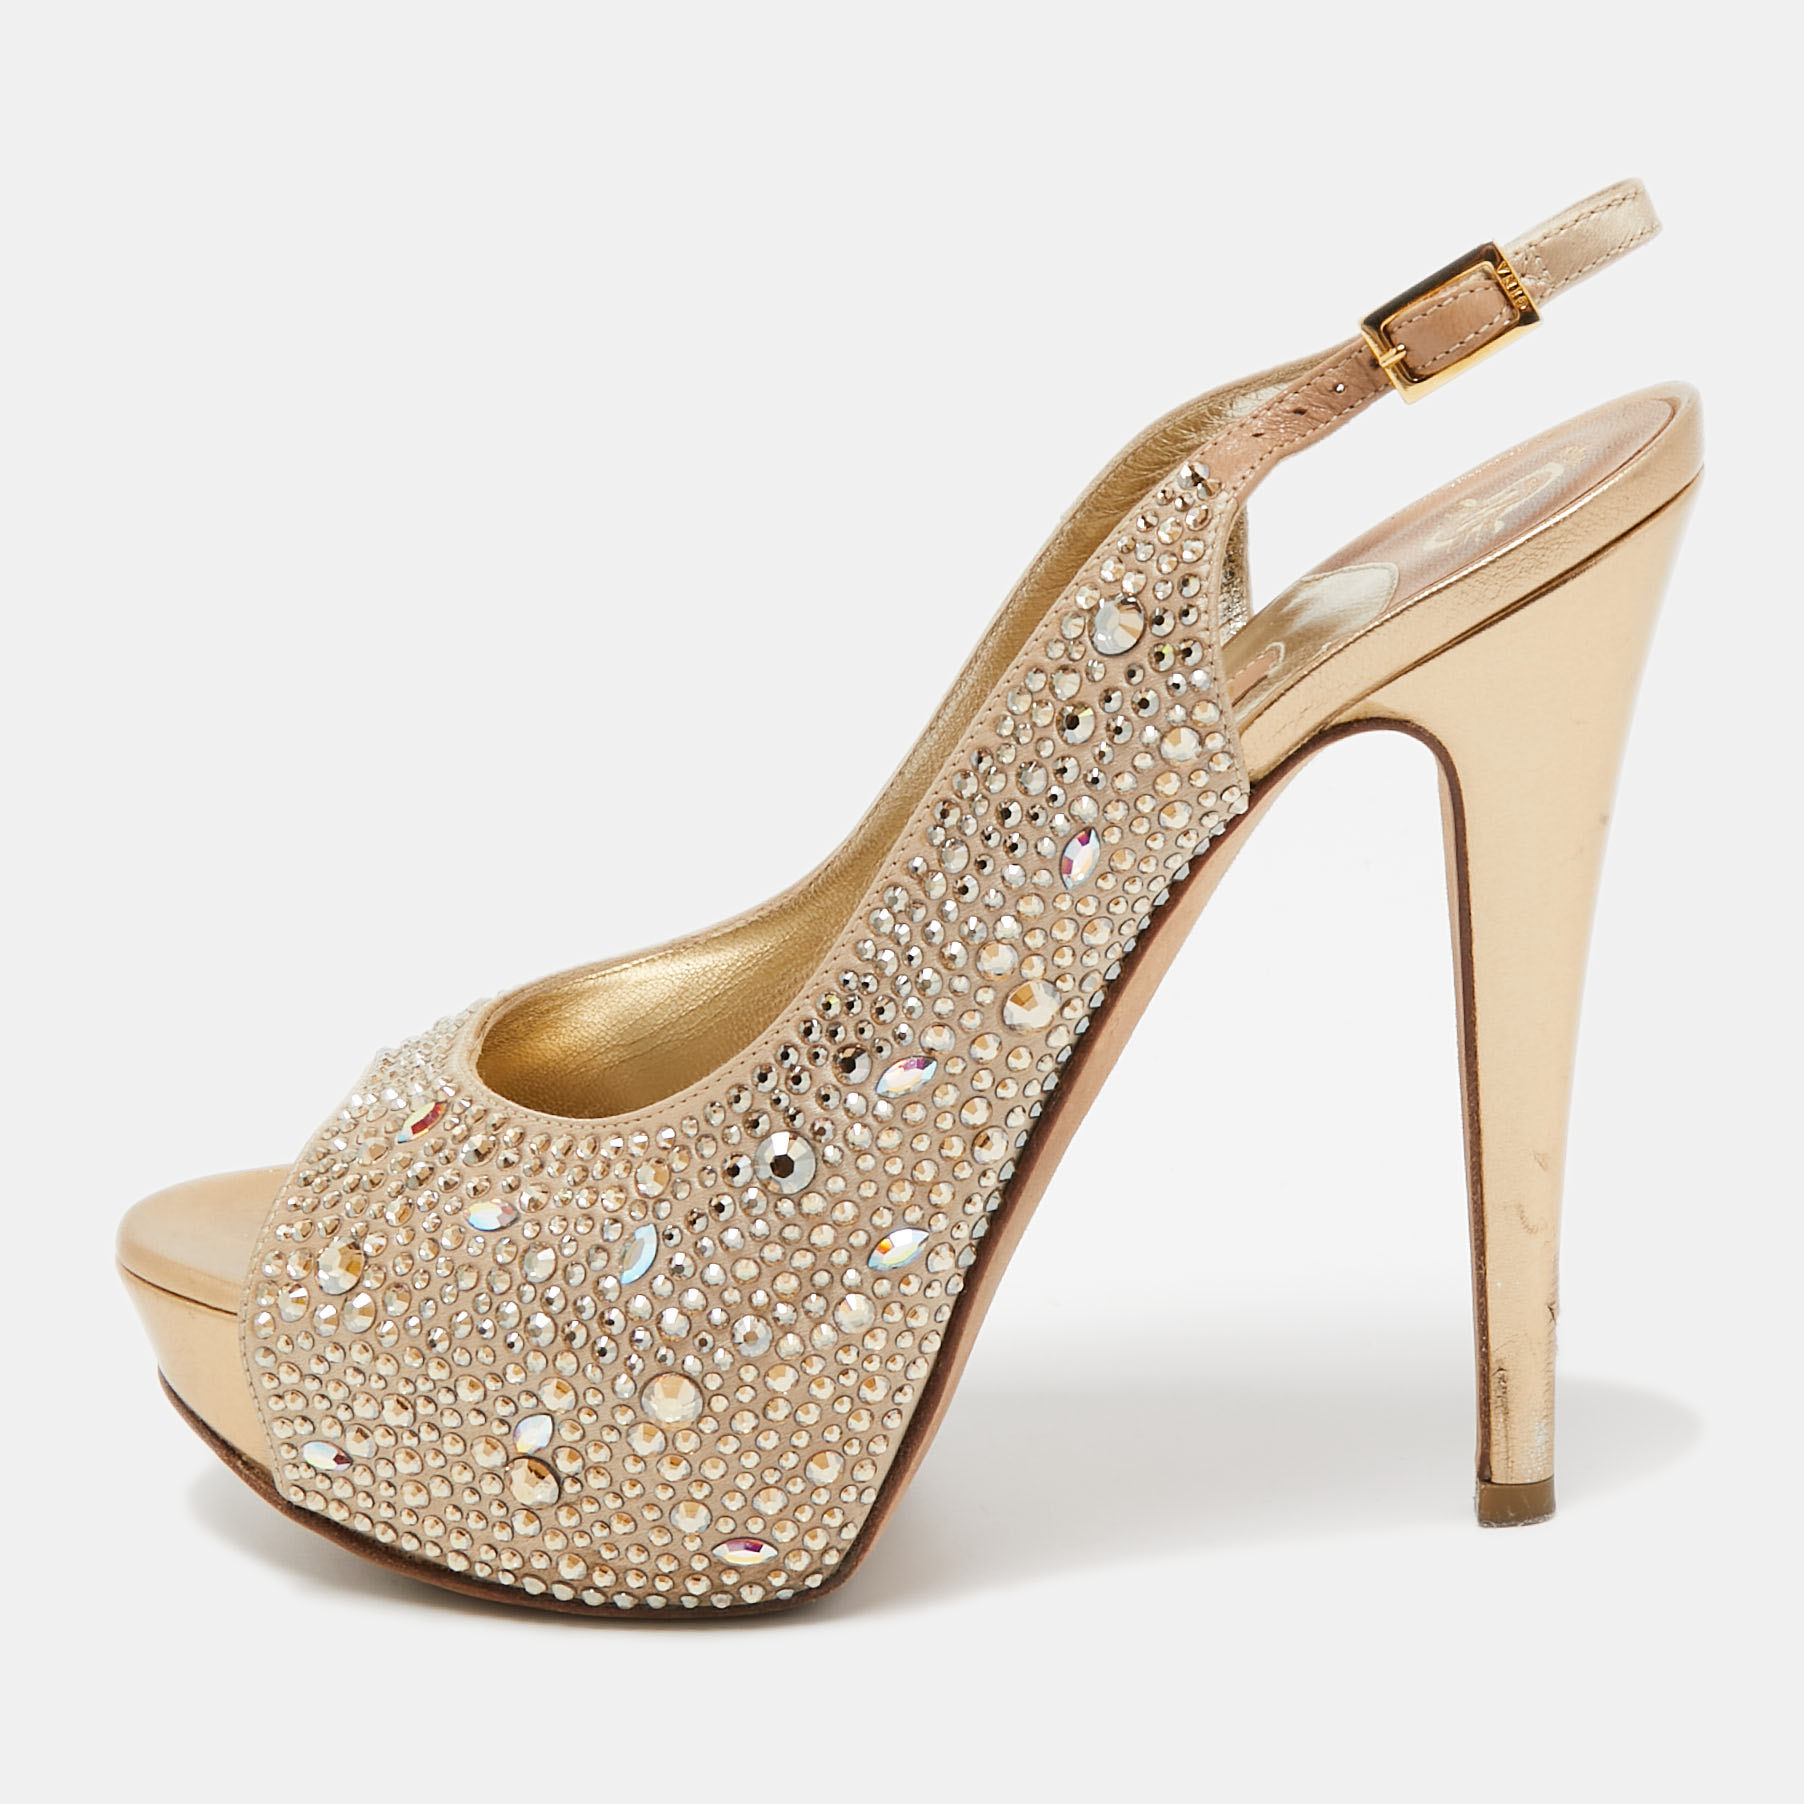 Gina Gold Satin Crystal Embellished Peep Toe Platform Pumps Size 38